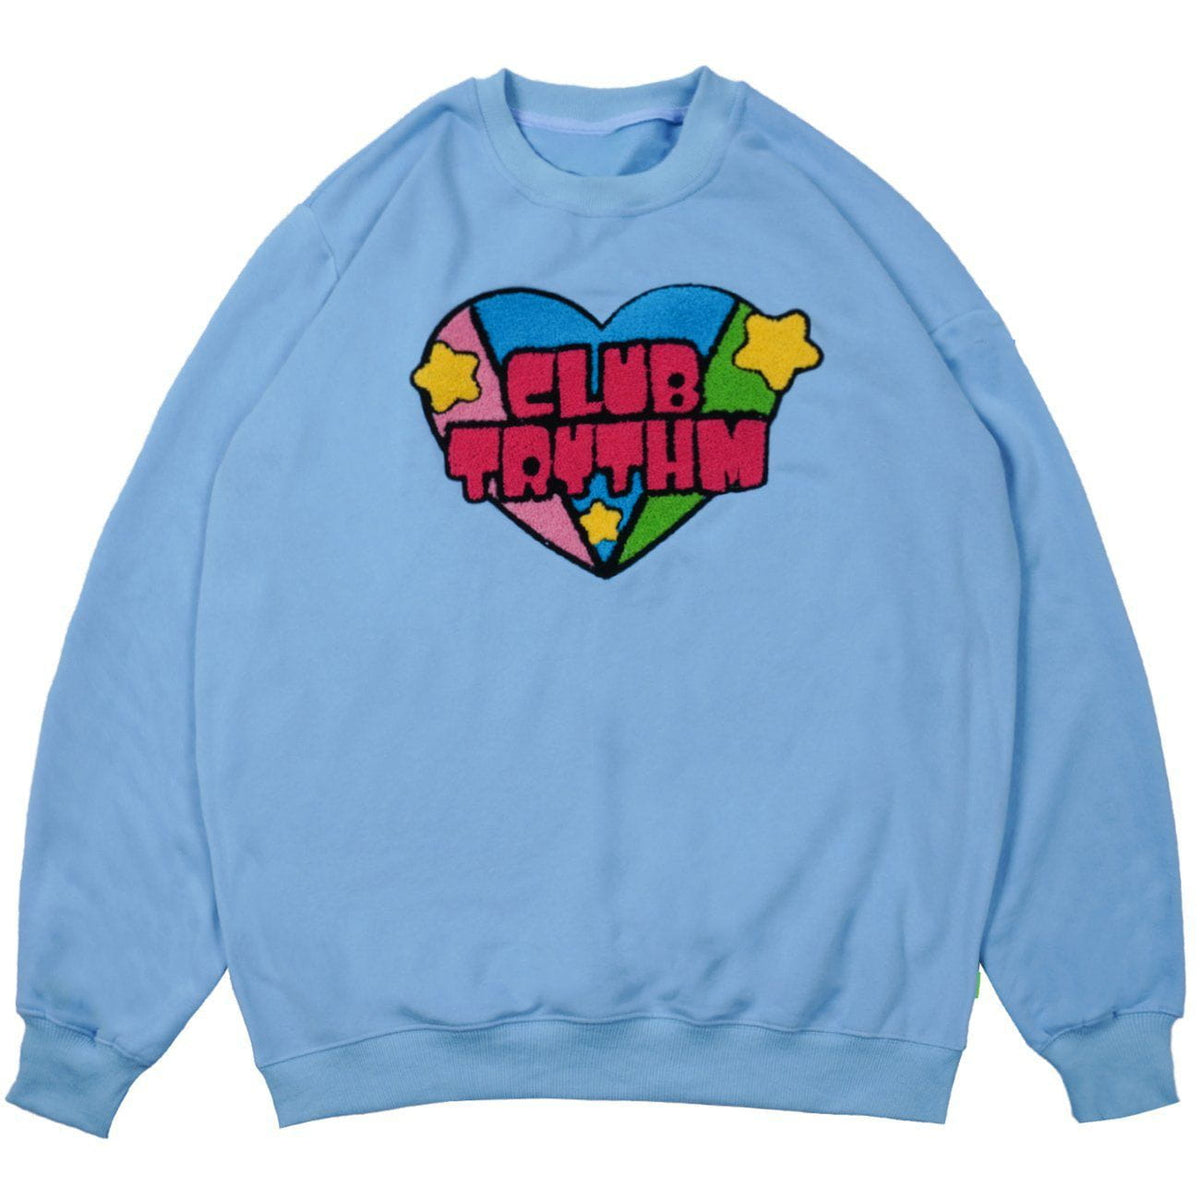 Eprezzy® - Embroidery Heart Sweatshirt Streetwear Fashion - eprezzy.com